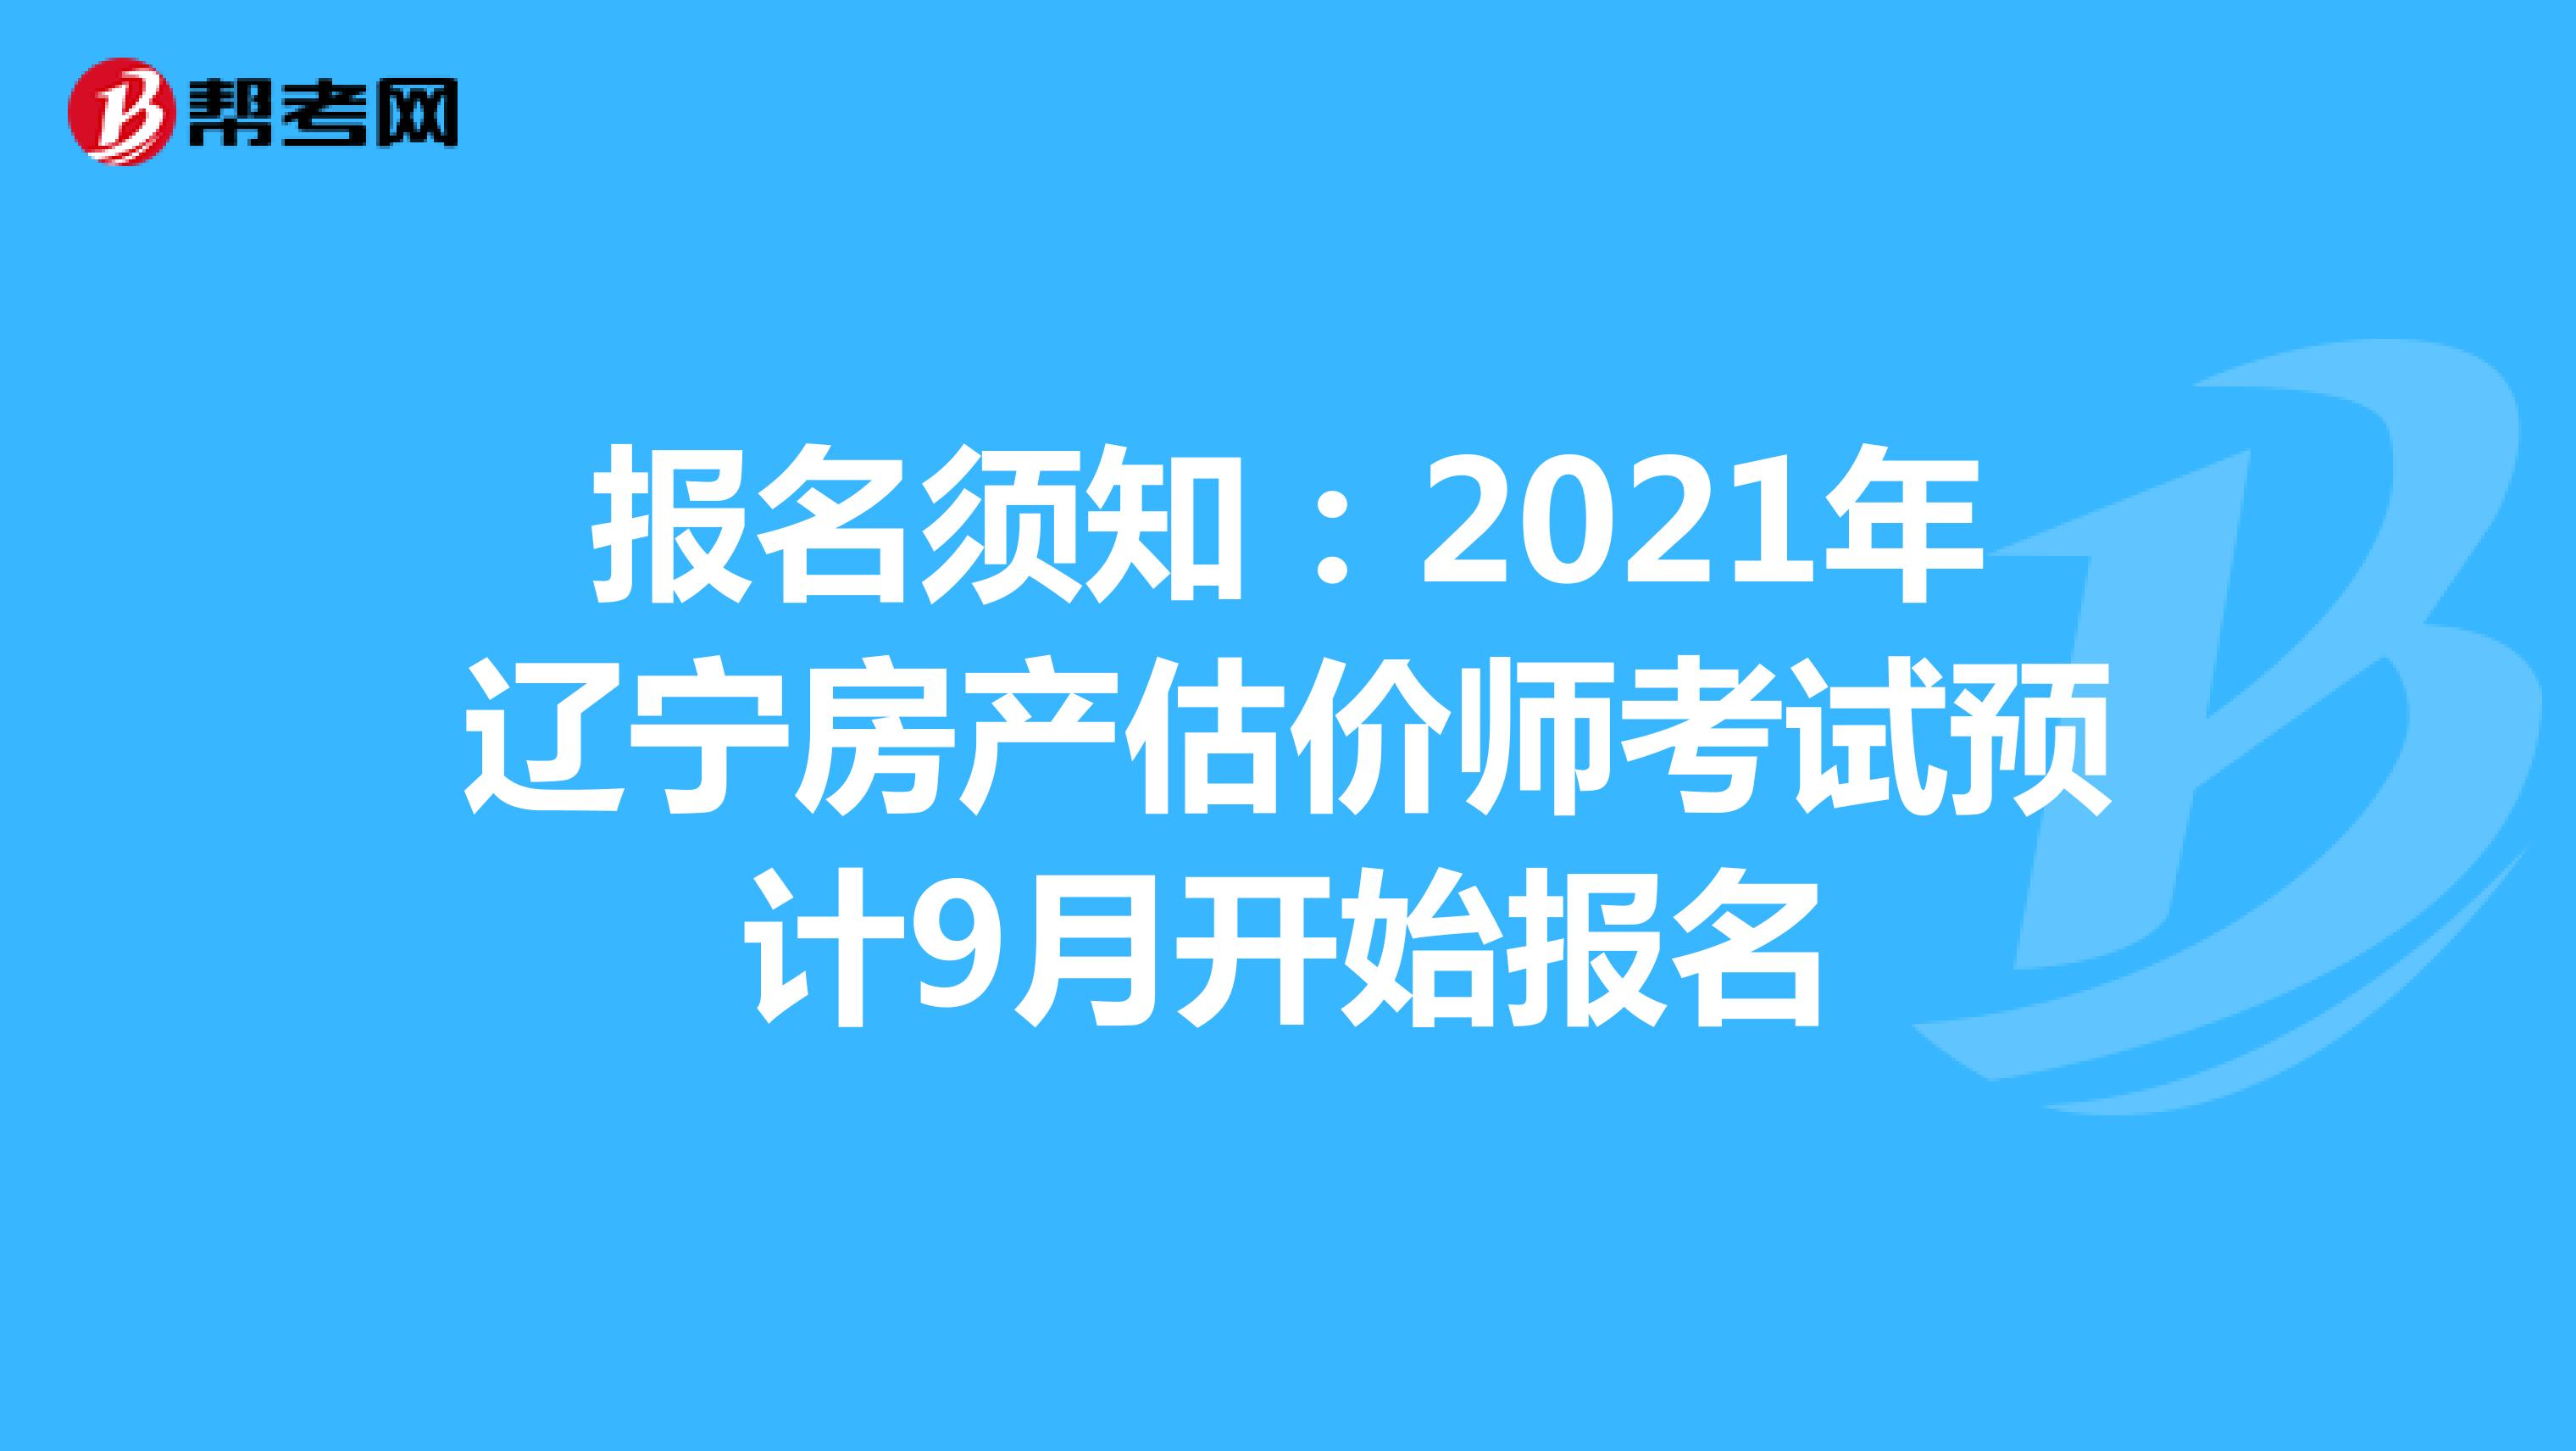 报名须知：2021年辽宁房产估价师考试预计9月开始报名